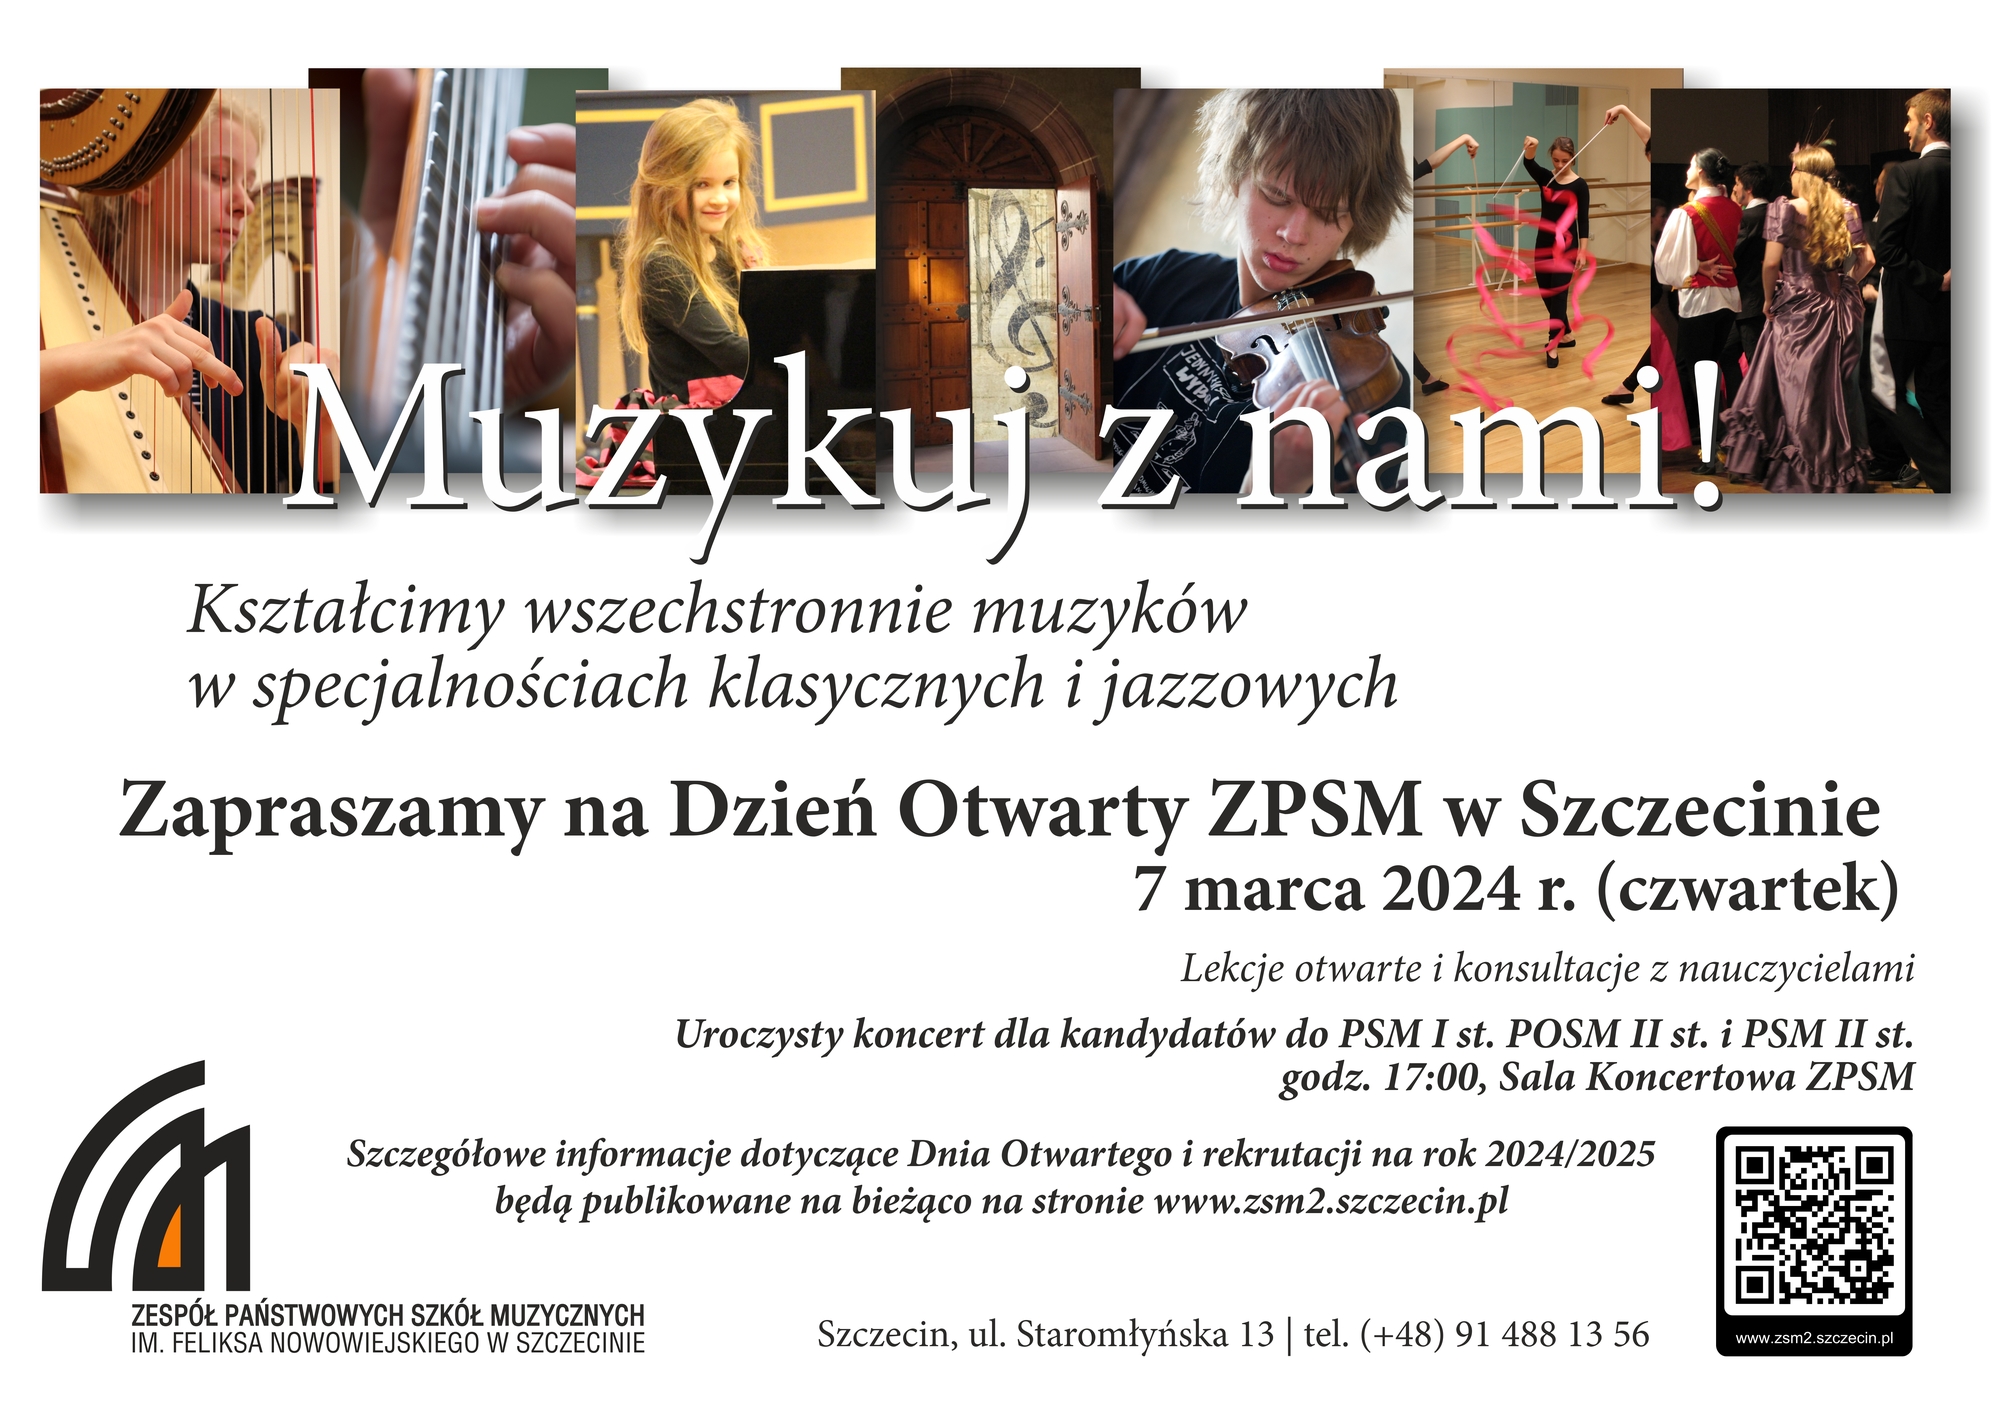 Plakat promujące Dzień otwartych drzwi w ZPSM w Szczecinie